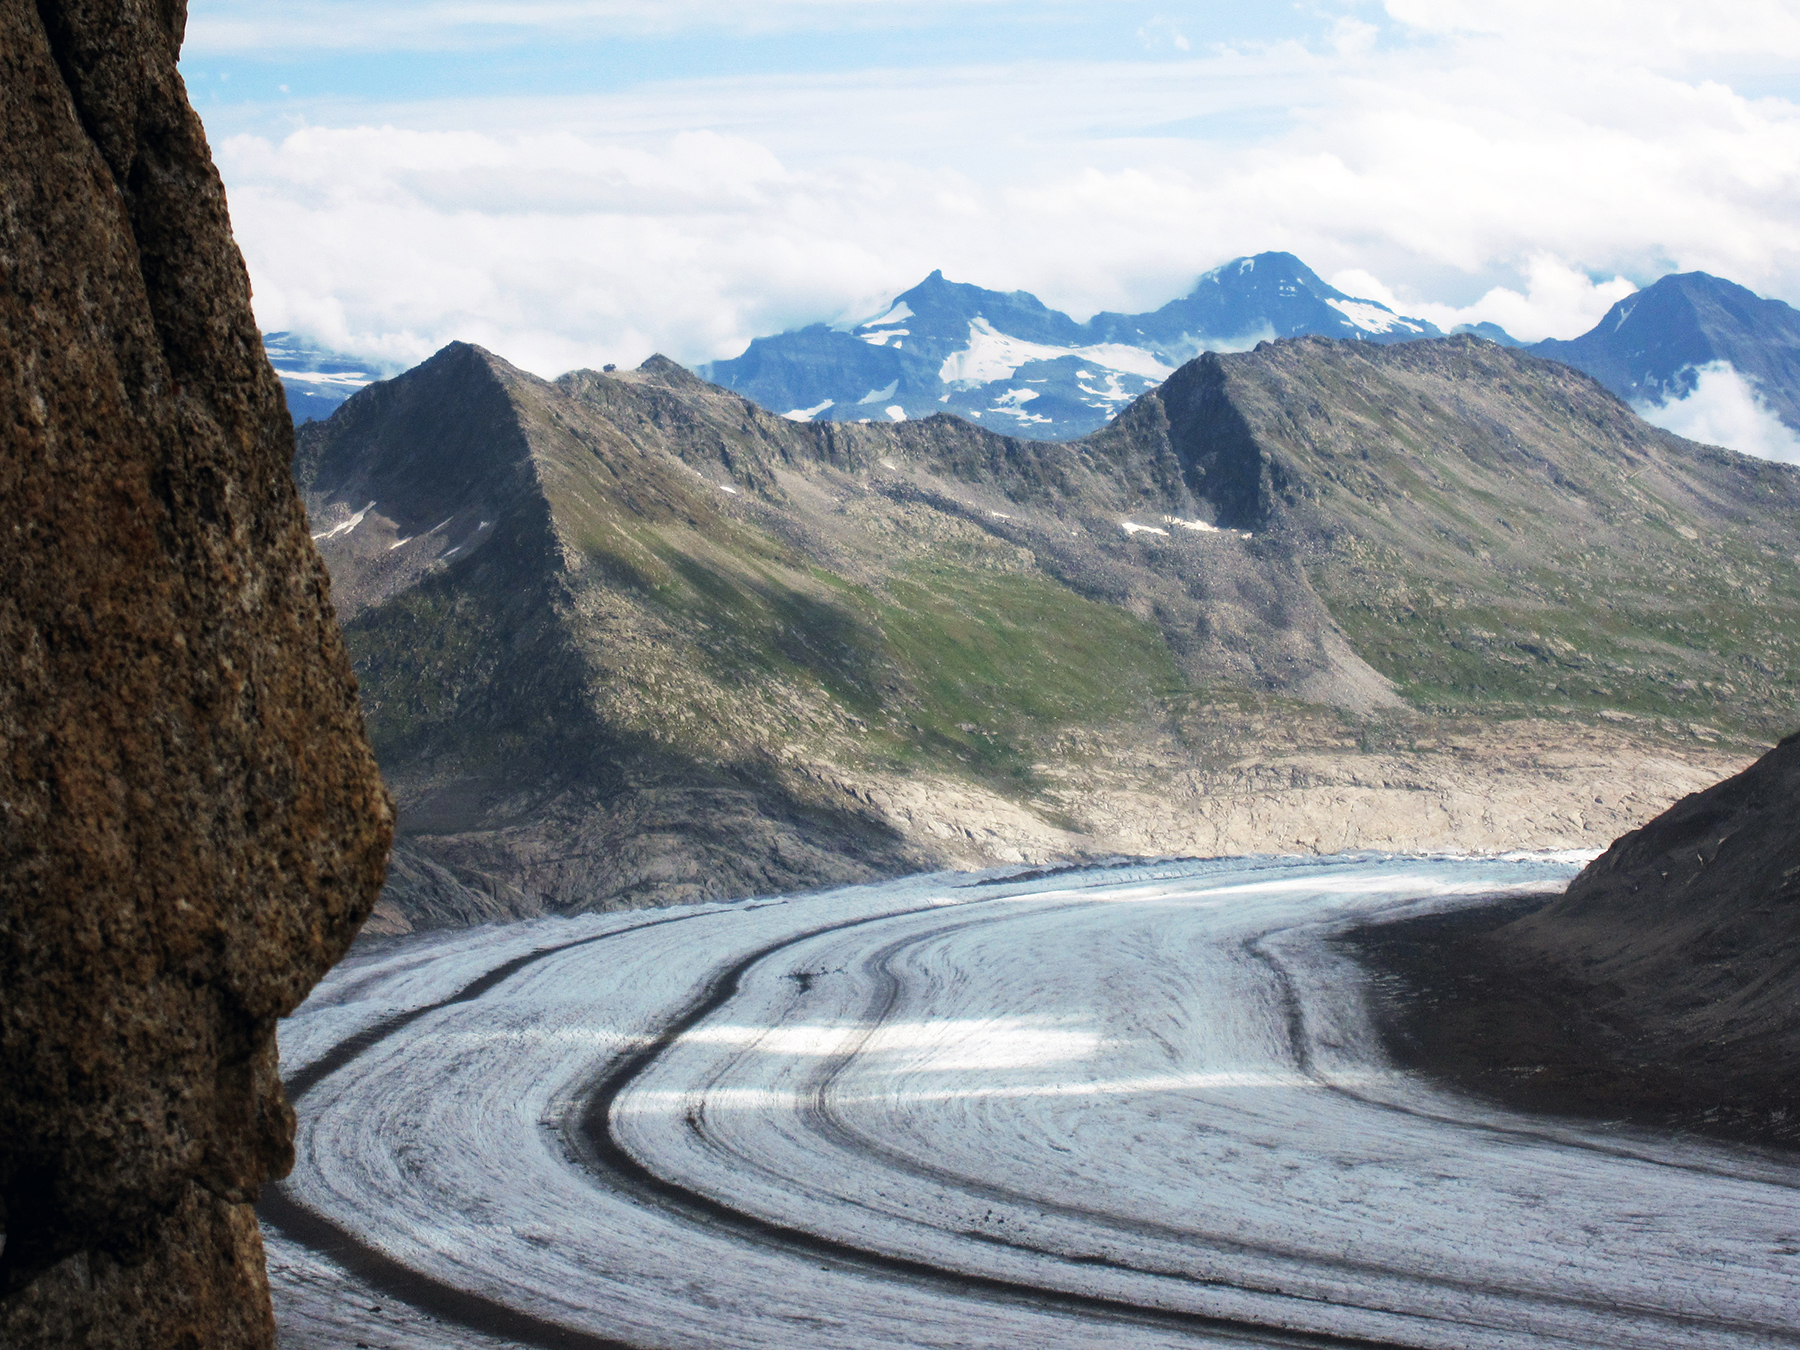 Blick auf den Aletschgletscher, der vor dem Eggishorn eine 90°-Wende in seiner Fliessrichtung vollführt. Bild: Marco Herwegh